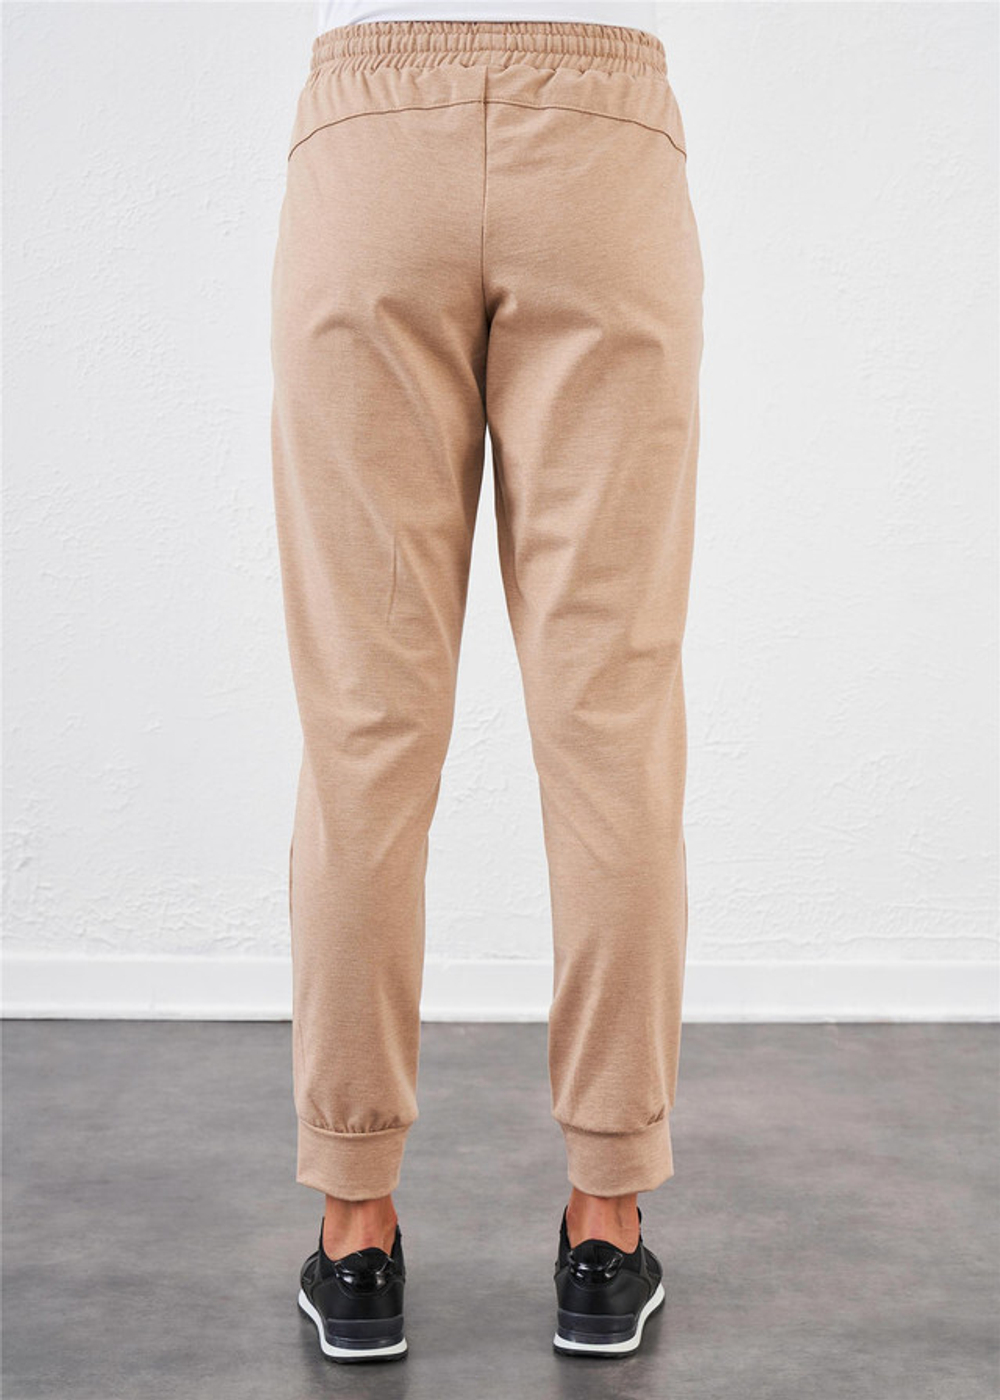 RELAX MODE / Спортивные штаны женские джоггеры женские спортивные брюки - 40085